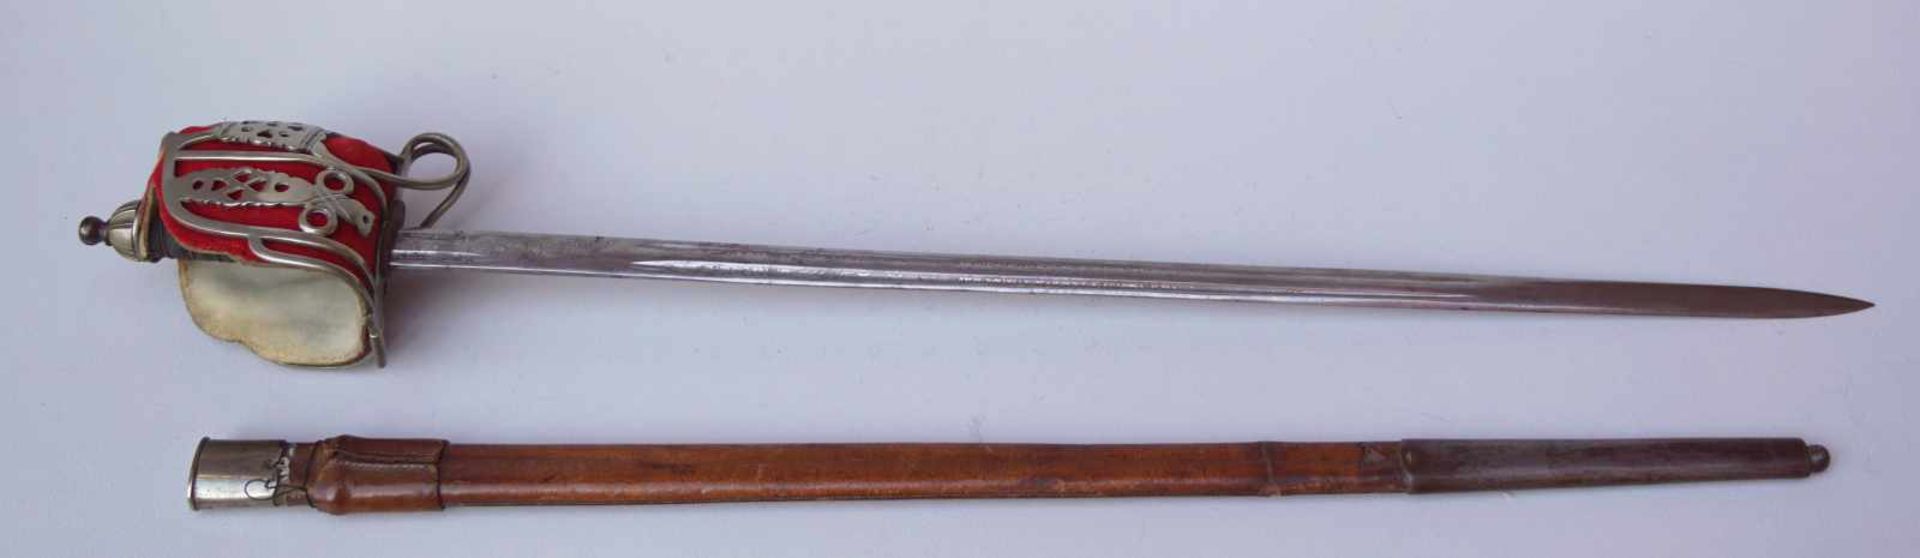 Schottischer Offiziersäbelsäbel Highlander ab 1828Breite Klinge doppelseitig geätze und gebläute - Bild 2 aus 4